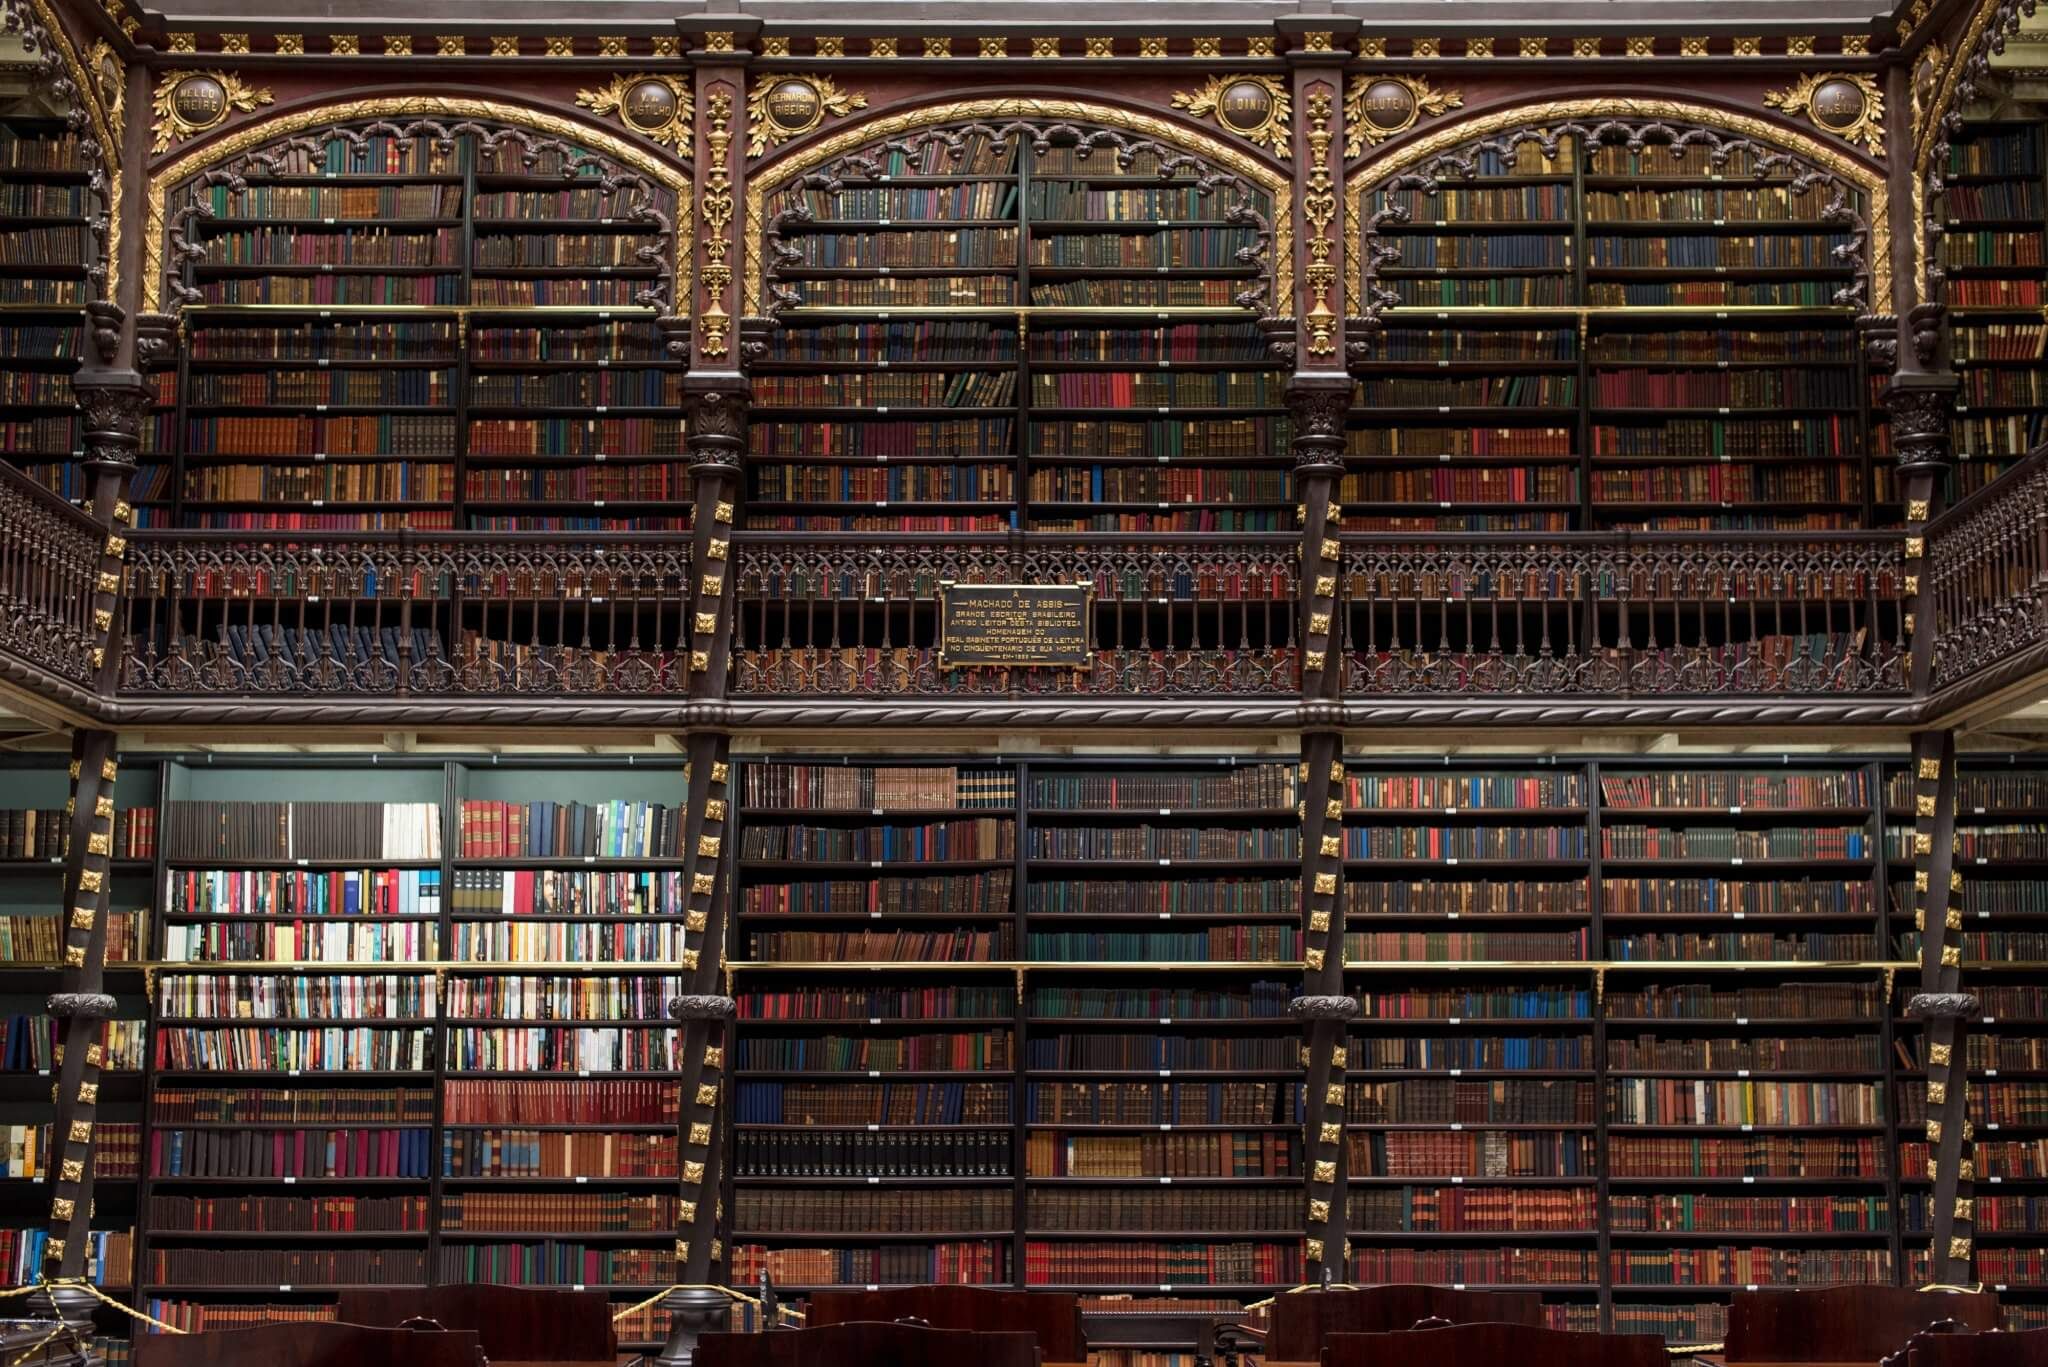 Dies sind Europas beste Städte für Bücherliebhaberinnen und Bücherliebhaber